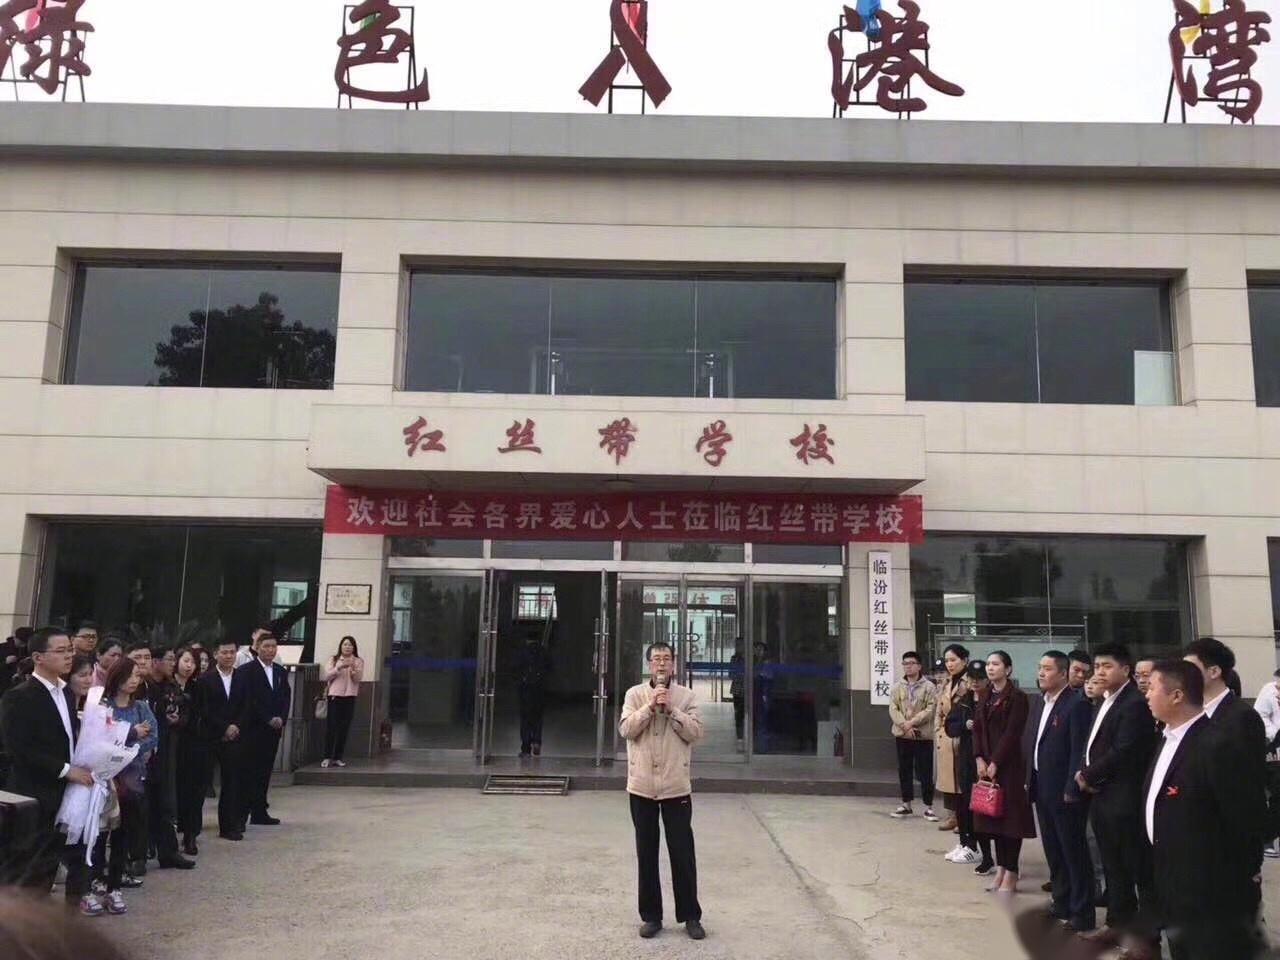 今日有幸来到临汾红丝带学校,这里是我国唯一一所专门接收艾滋病感染